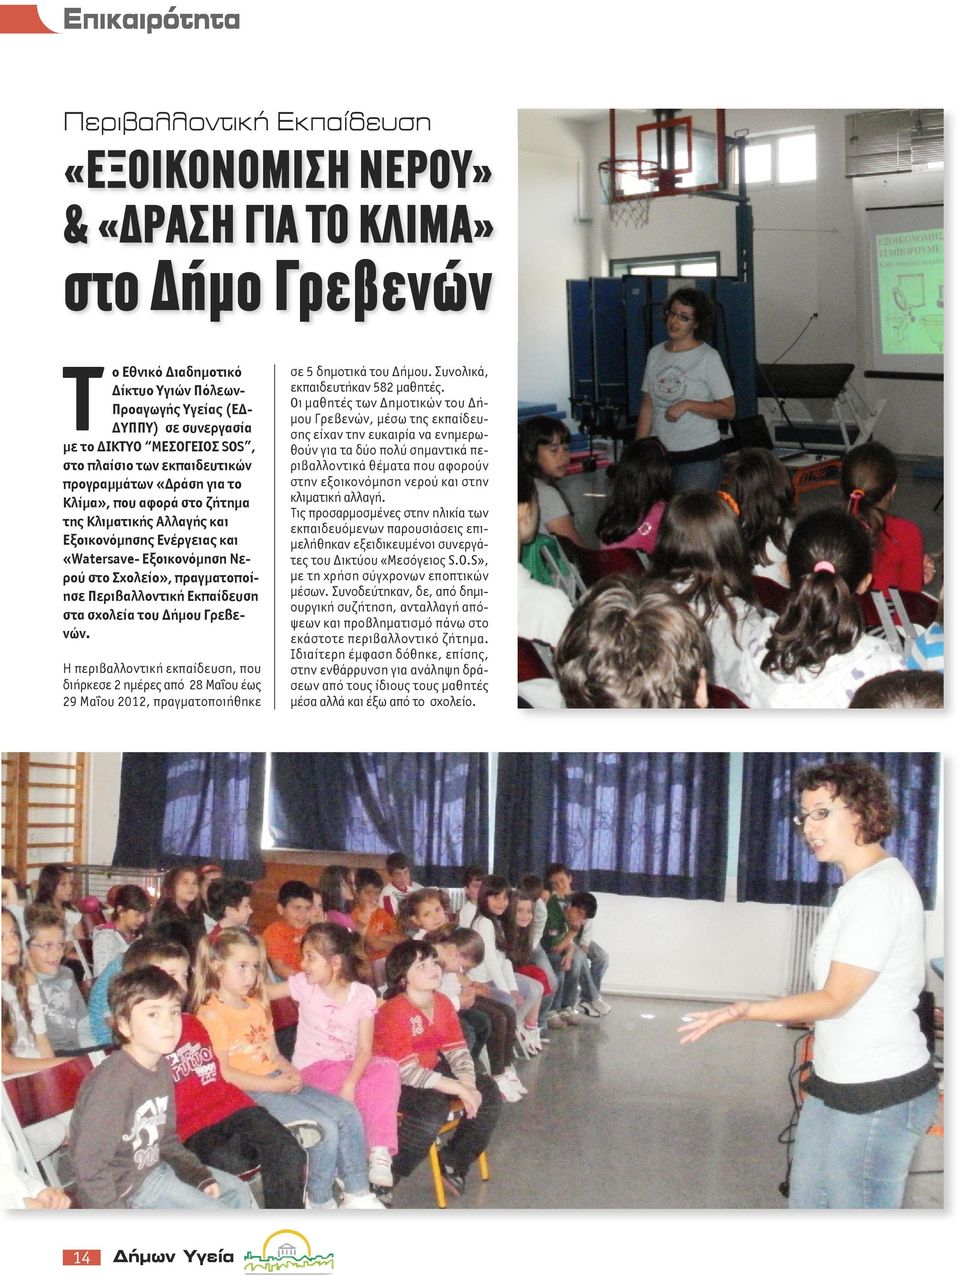 πραγματοποίησε Περιβαλλοντική Εκπαίδευση στα σχολεία του Δήμου Γρεβενών. Η περιβαλλοντική εκπαίδευση, που διήρκεσε 2 ημέρες από 28 Μαΐου έως 29 Μαΐου 2012, πραγματοποιήθηκε σε 5 δημοτικά του Δήμου.